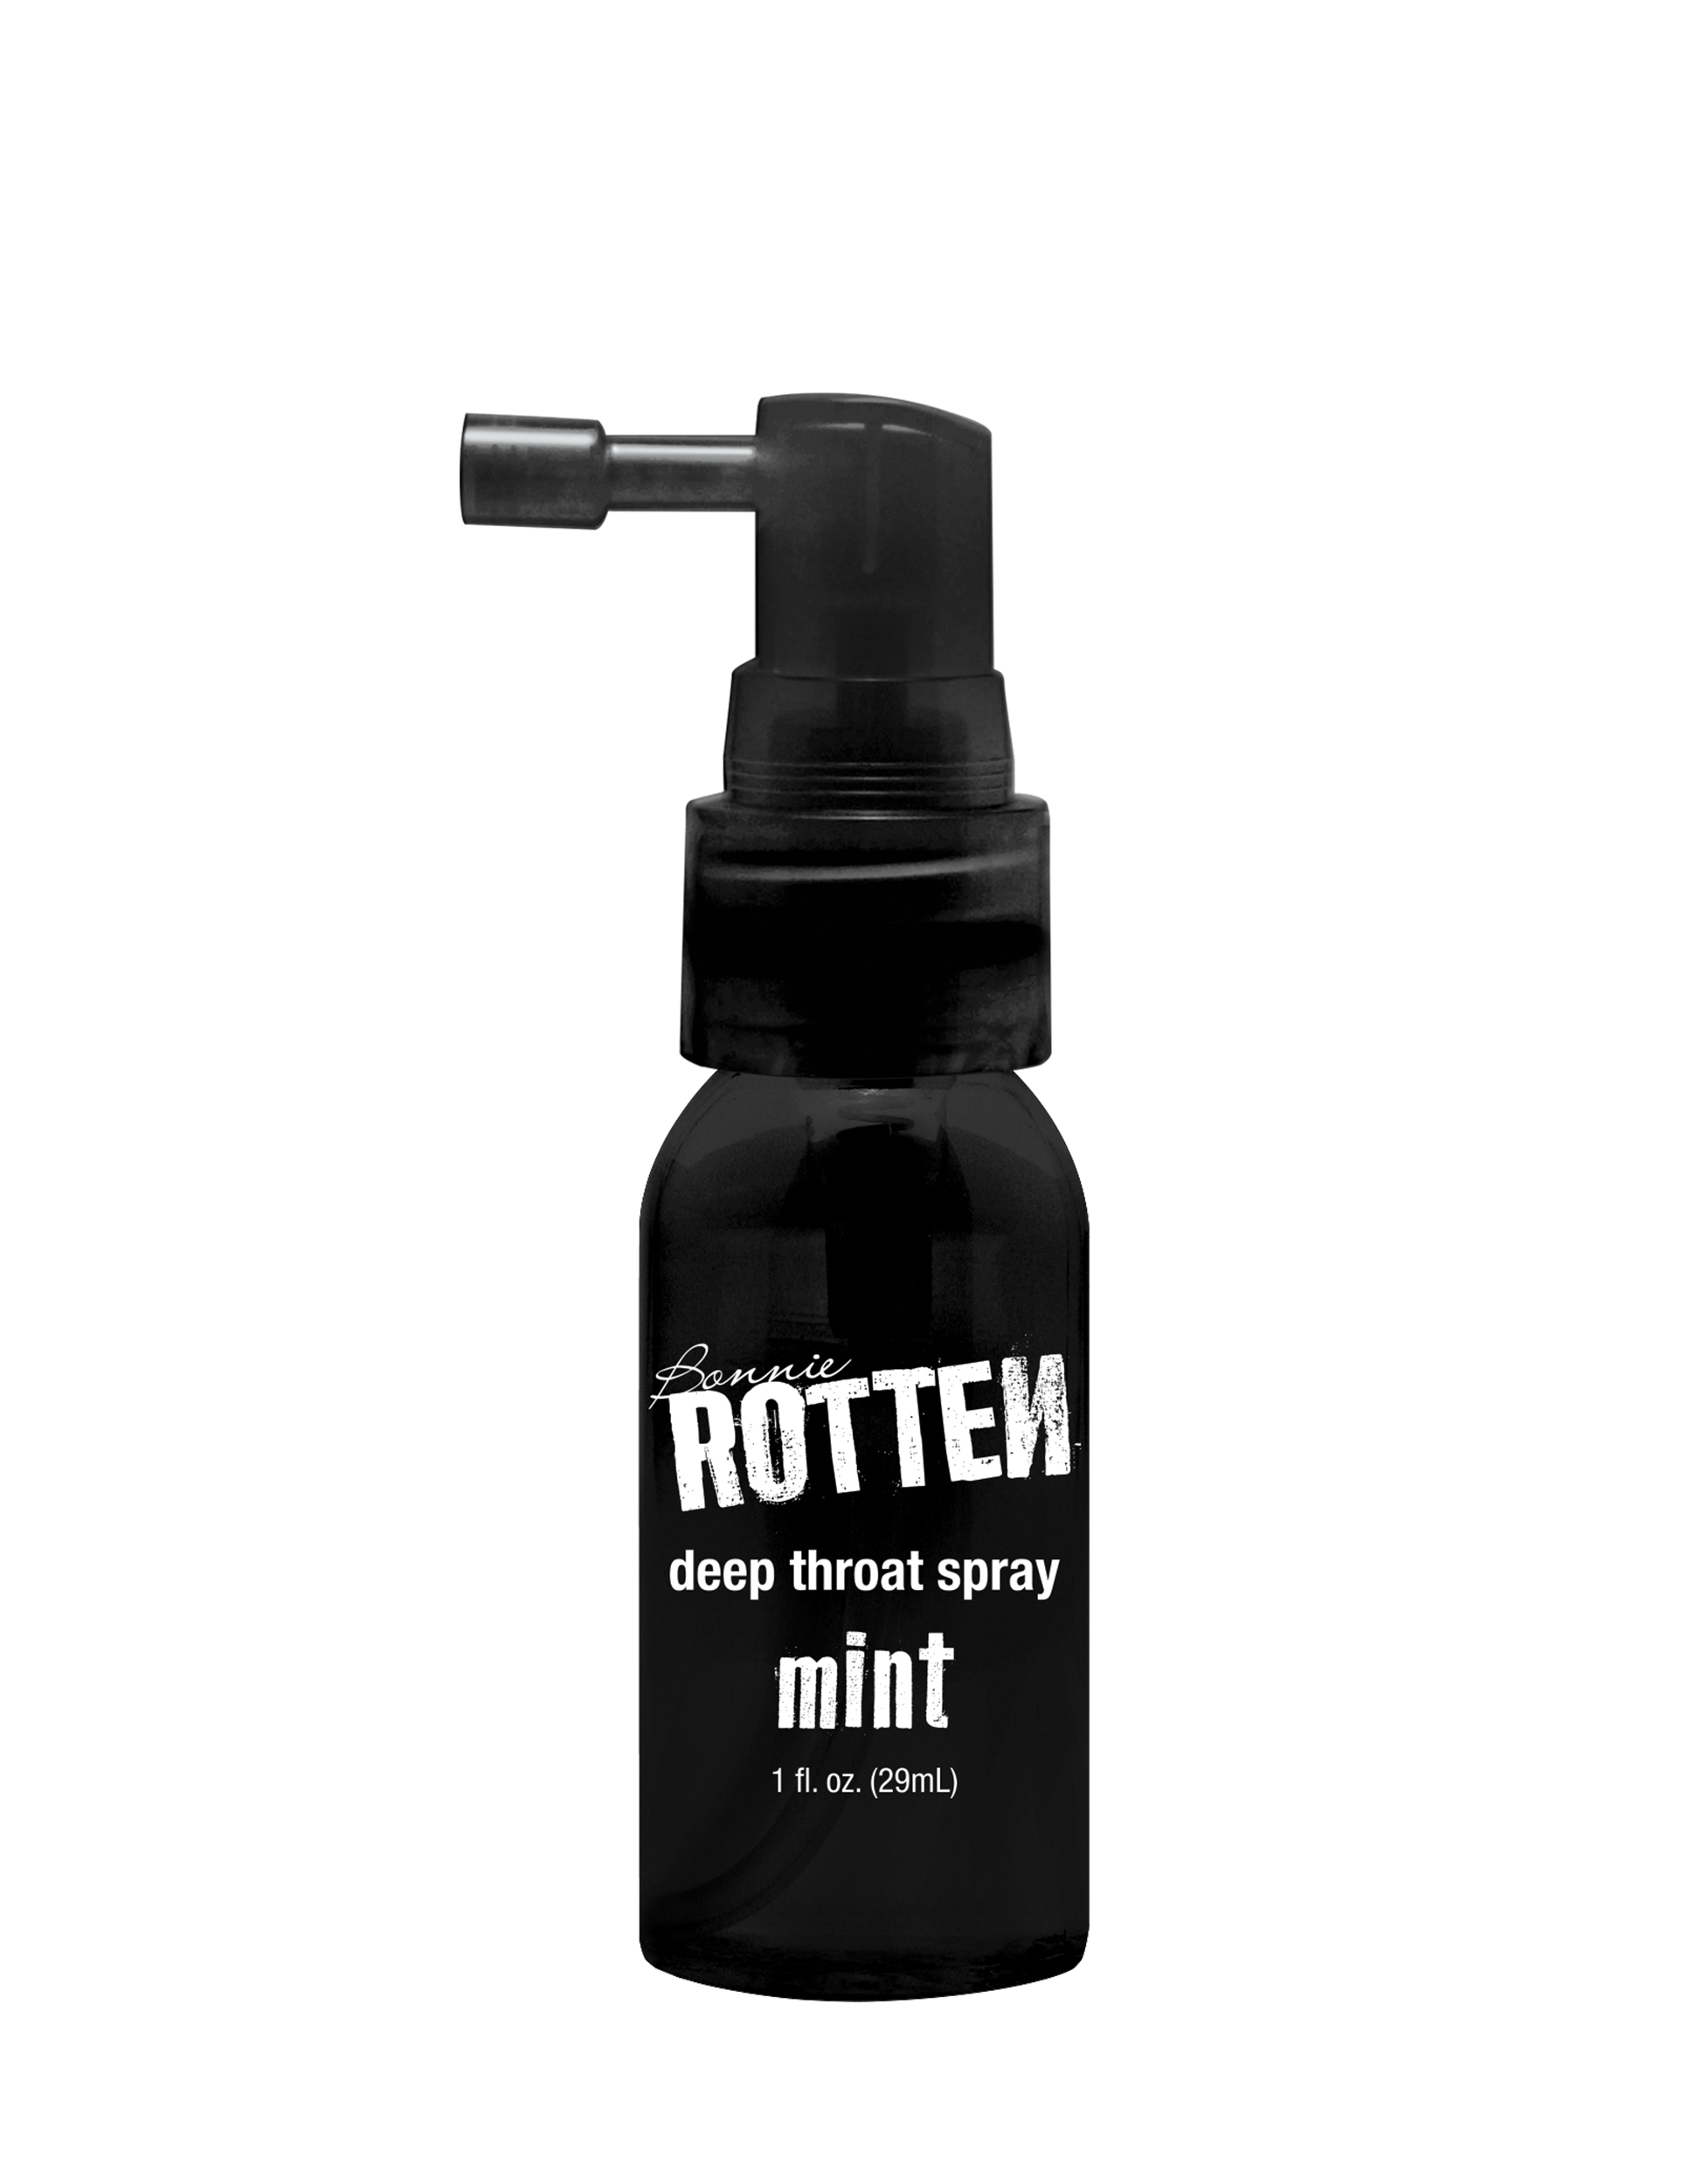 Bonnie rottens deep throat spray mint.